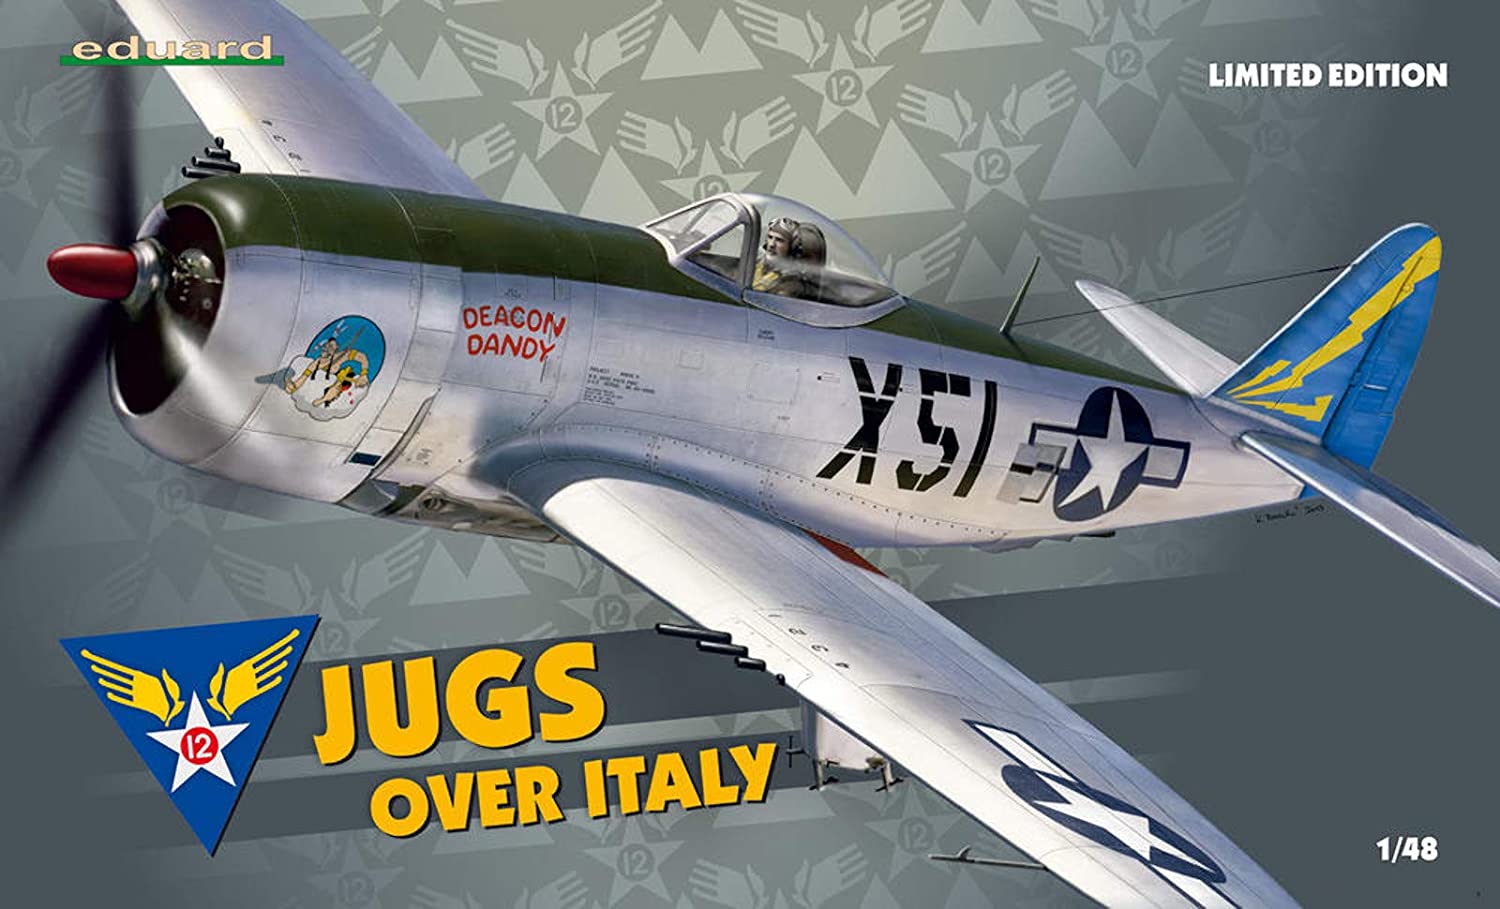 エデュアルド 1/48 リミテッドエディション P-47D"Jugs over Italy" プラモデル